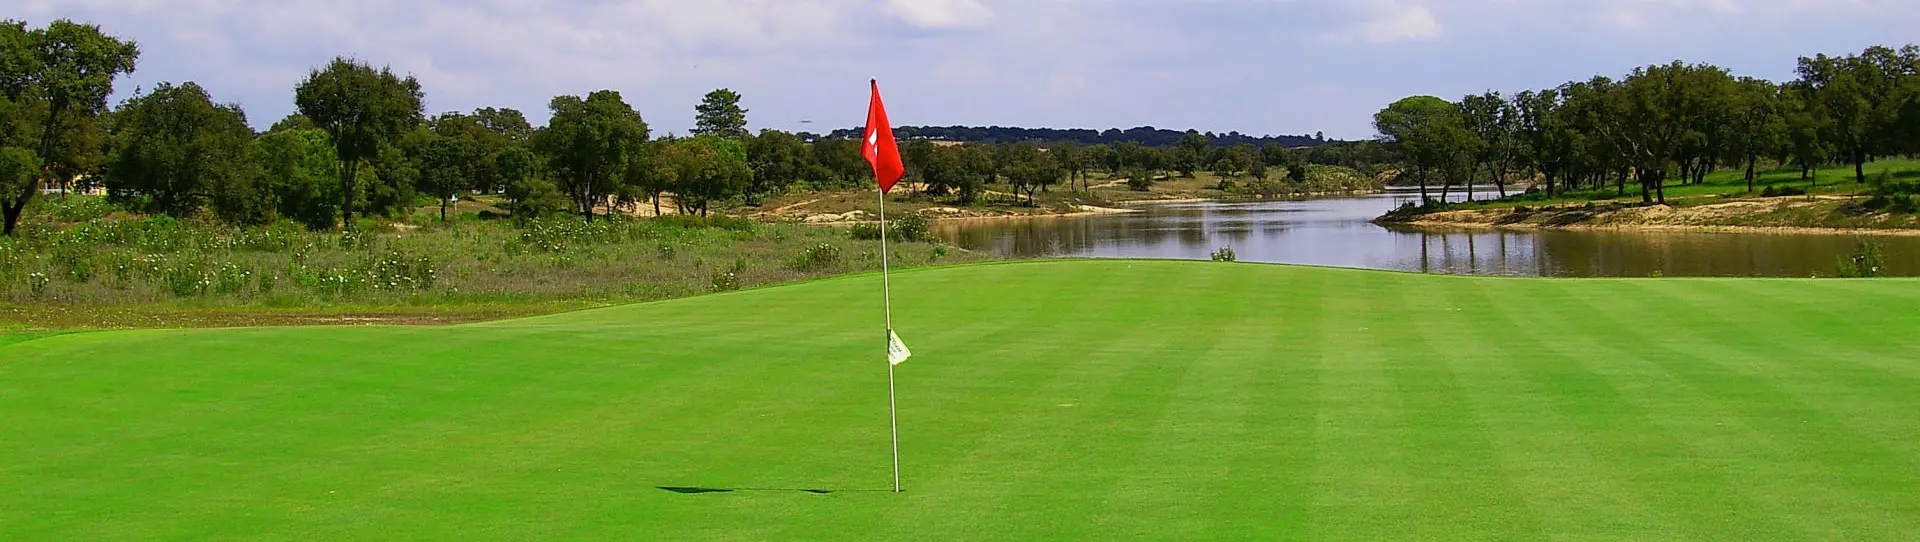 Portugal golf courses - Santo Estêvão - Photo 1